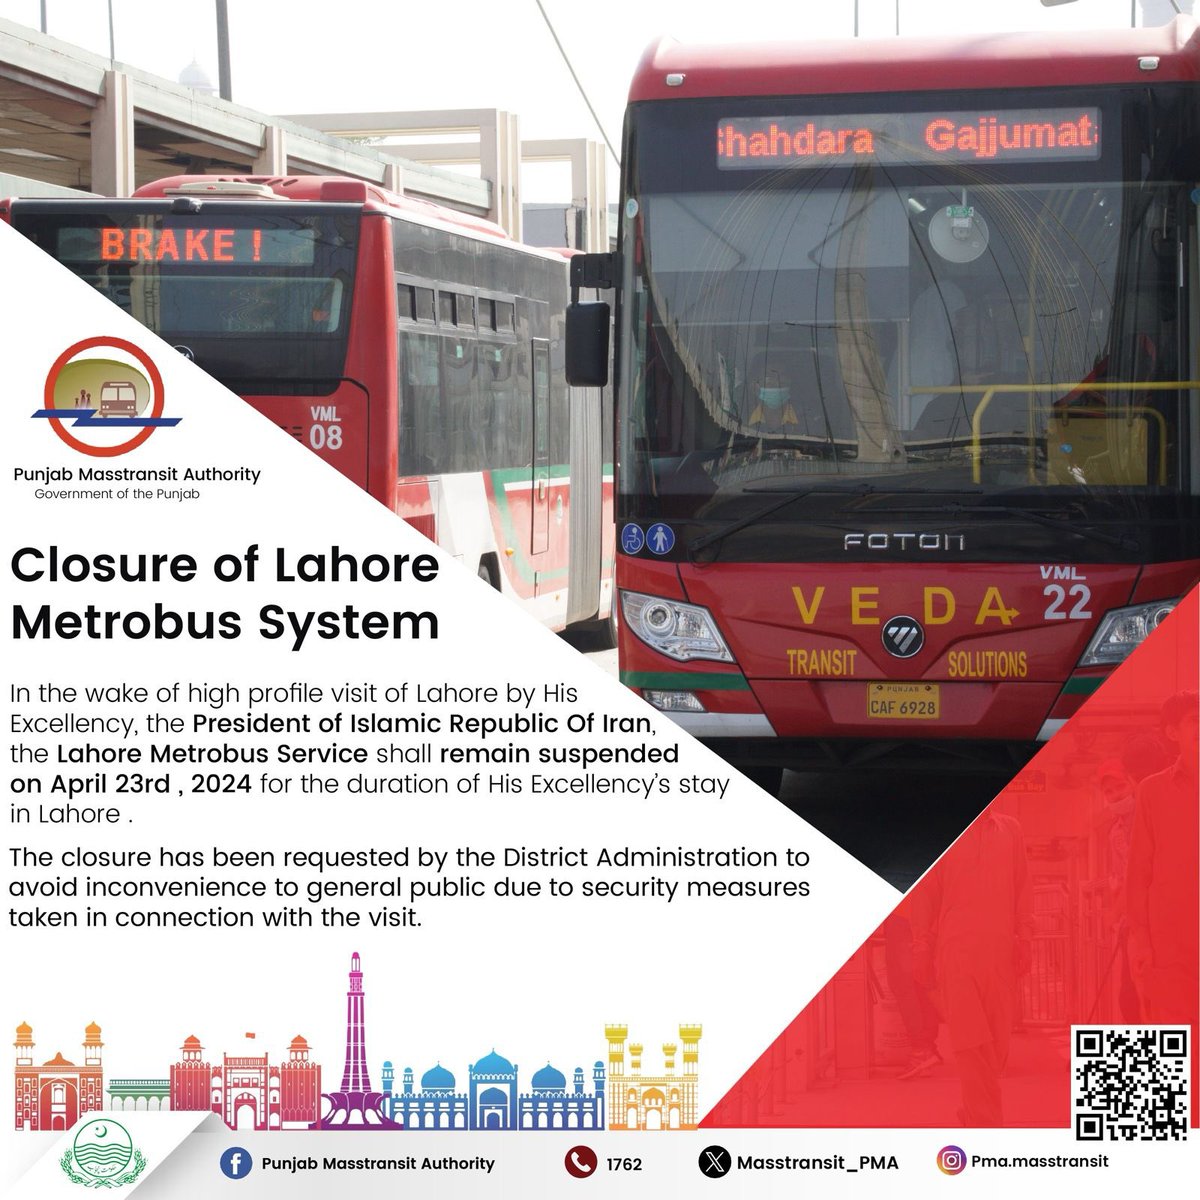 𝐒𝐞𝐫𝐯𝐢𝐜𝐞 𝐀𝐥𝐞𝐫𝐭! 
𝐂𝐥𝐨𝐬𝐮𝐫𝐞 𝐨𝐟 𝐋𝐚𝐡𝐨𝐫𝐞 𝐌𝐞𝐭𝐫𝐨𝐛𝐮𝐬 𝐒𝐲𝐬𝐭𝐞𝐦  #PunjabMasstransitAuthority #PMA #ServiceAlert #GovtofPunjab #GovtofPakistan #Transportdeptt #transportdepartment #Suspended #23rdApril2024